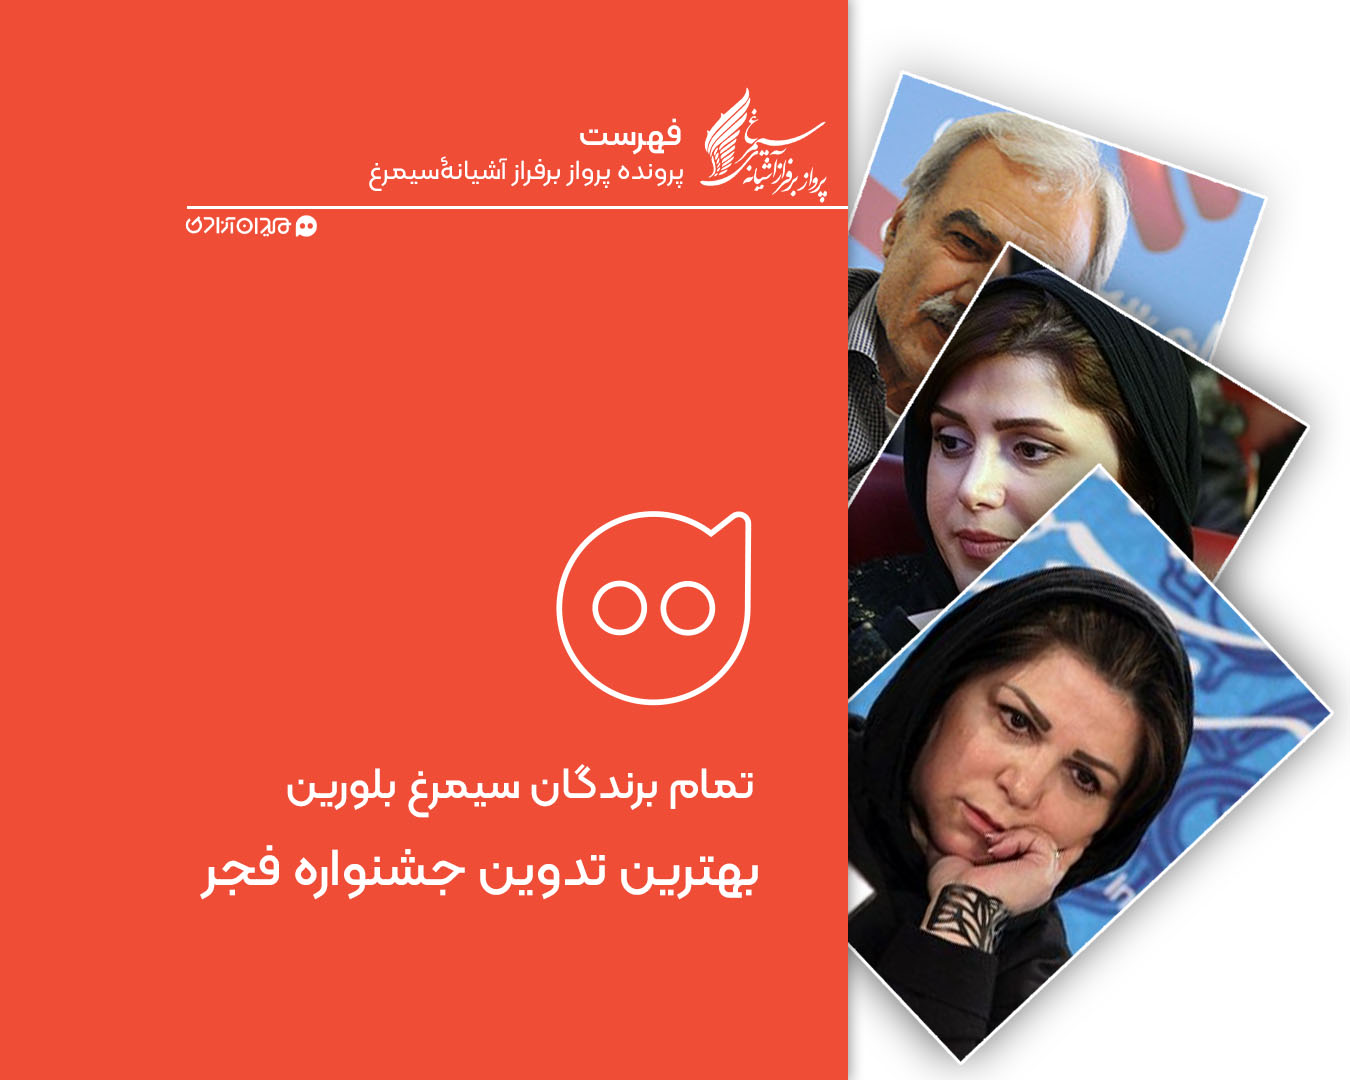 فهرست: تمام برندگان سیمرغ بلورین بهترین تدوین جشنواره فیلم فجر از ابتدا تاکنون